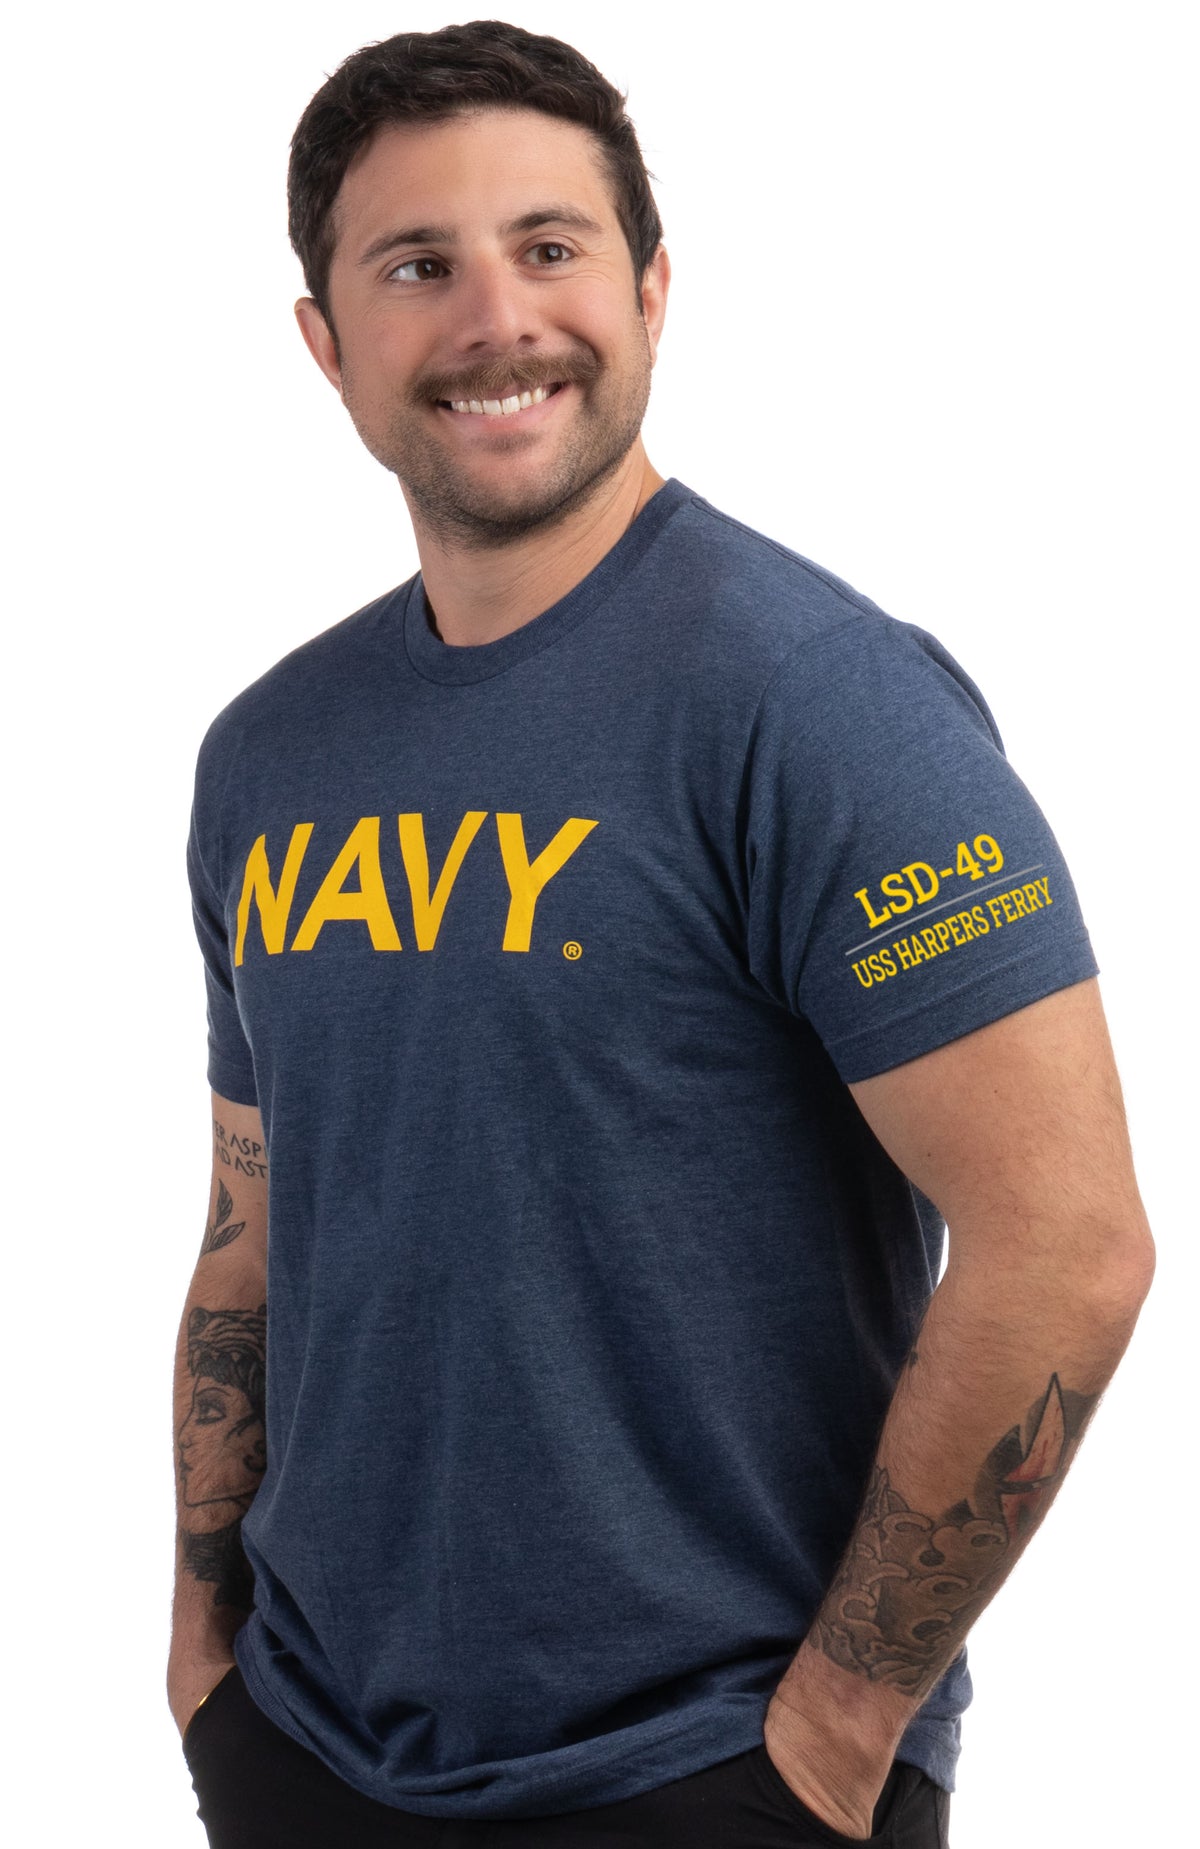 USS Harpers Ferry, LSD-49 | U.S. Navy Sailor Veteran USN United States Naval T-shirt for Men Women